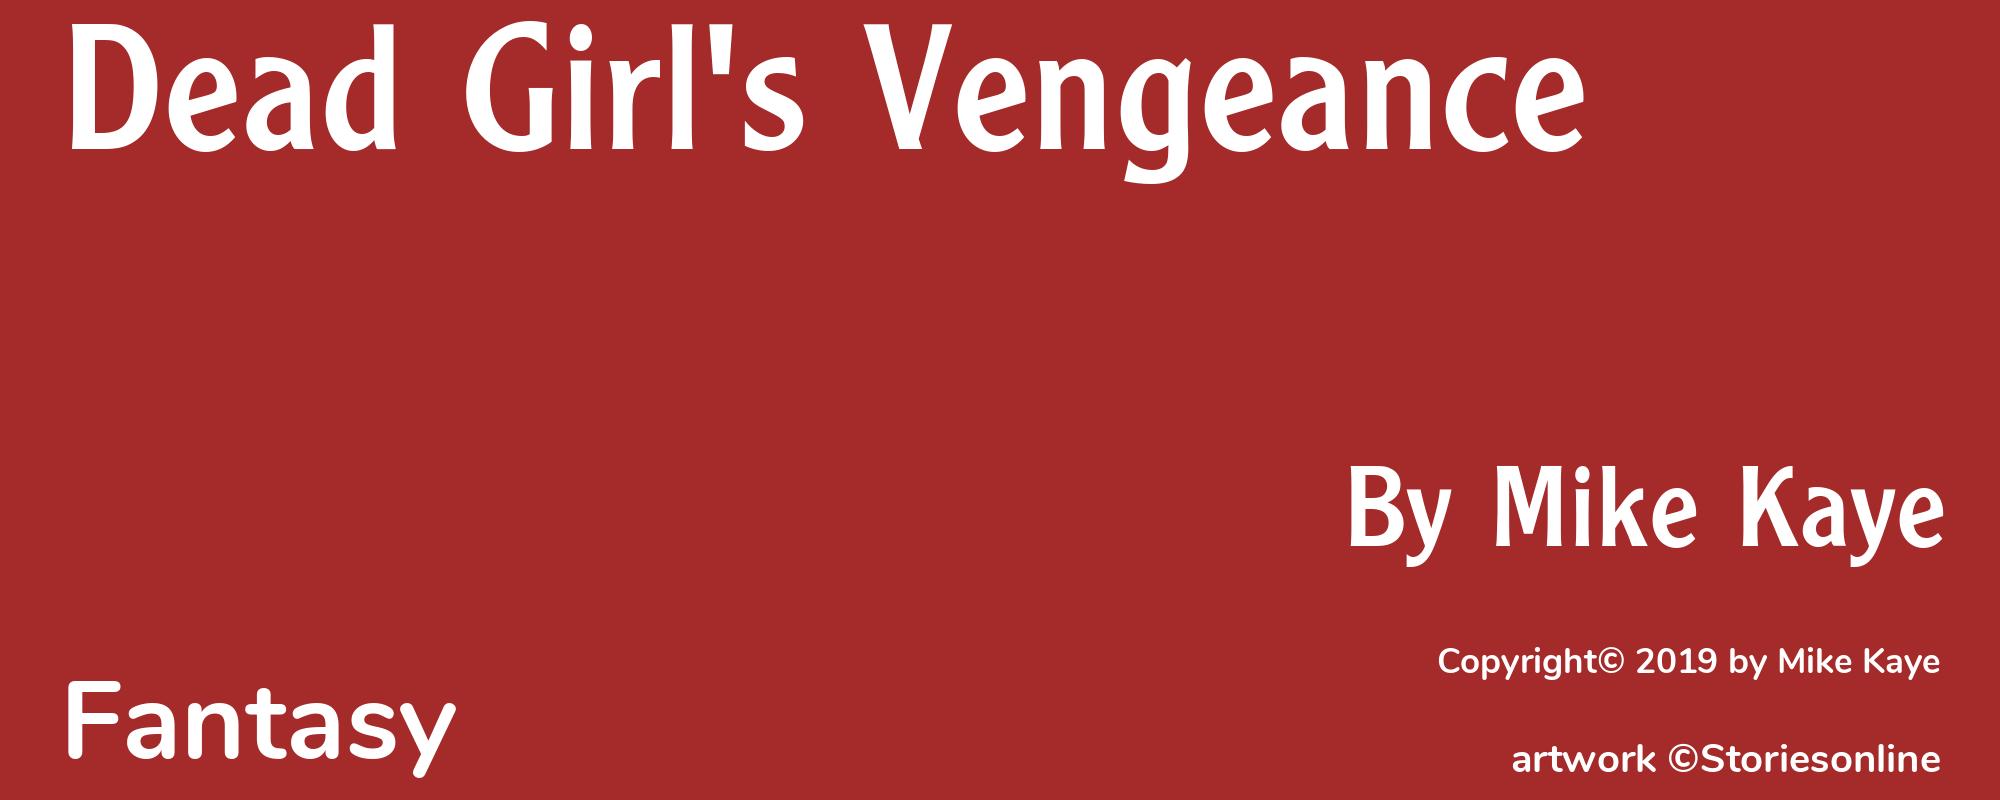 Dead Girl's Vengeance - Cover